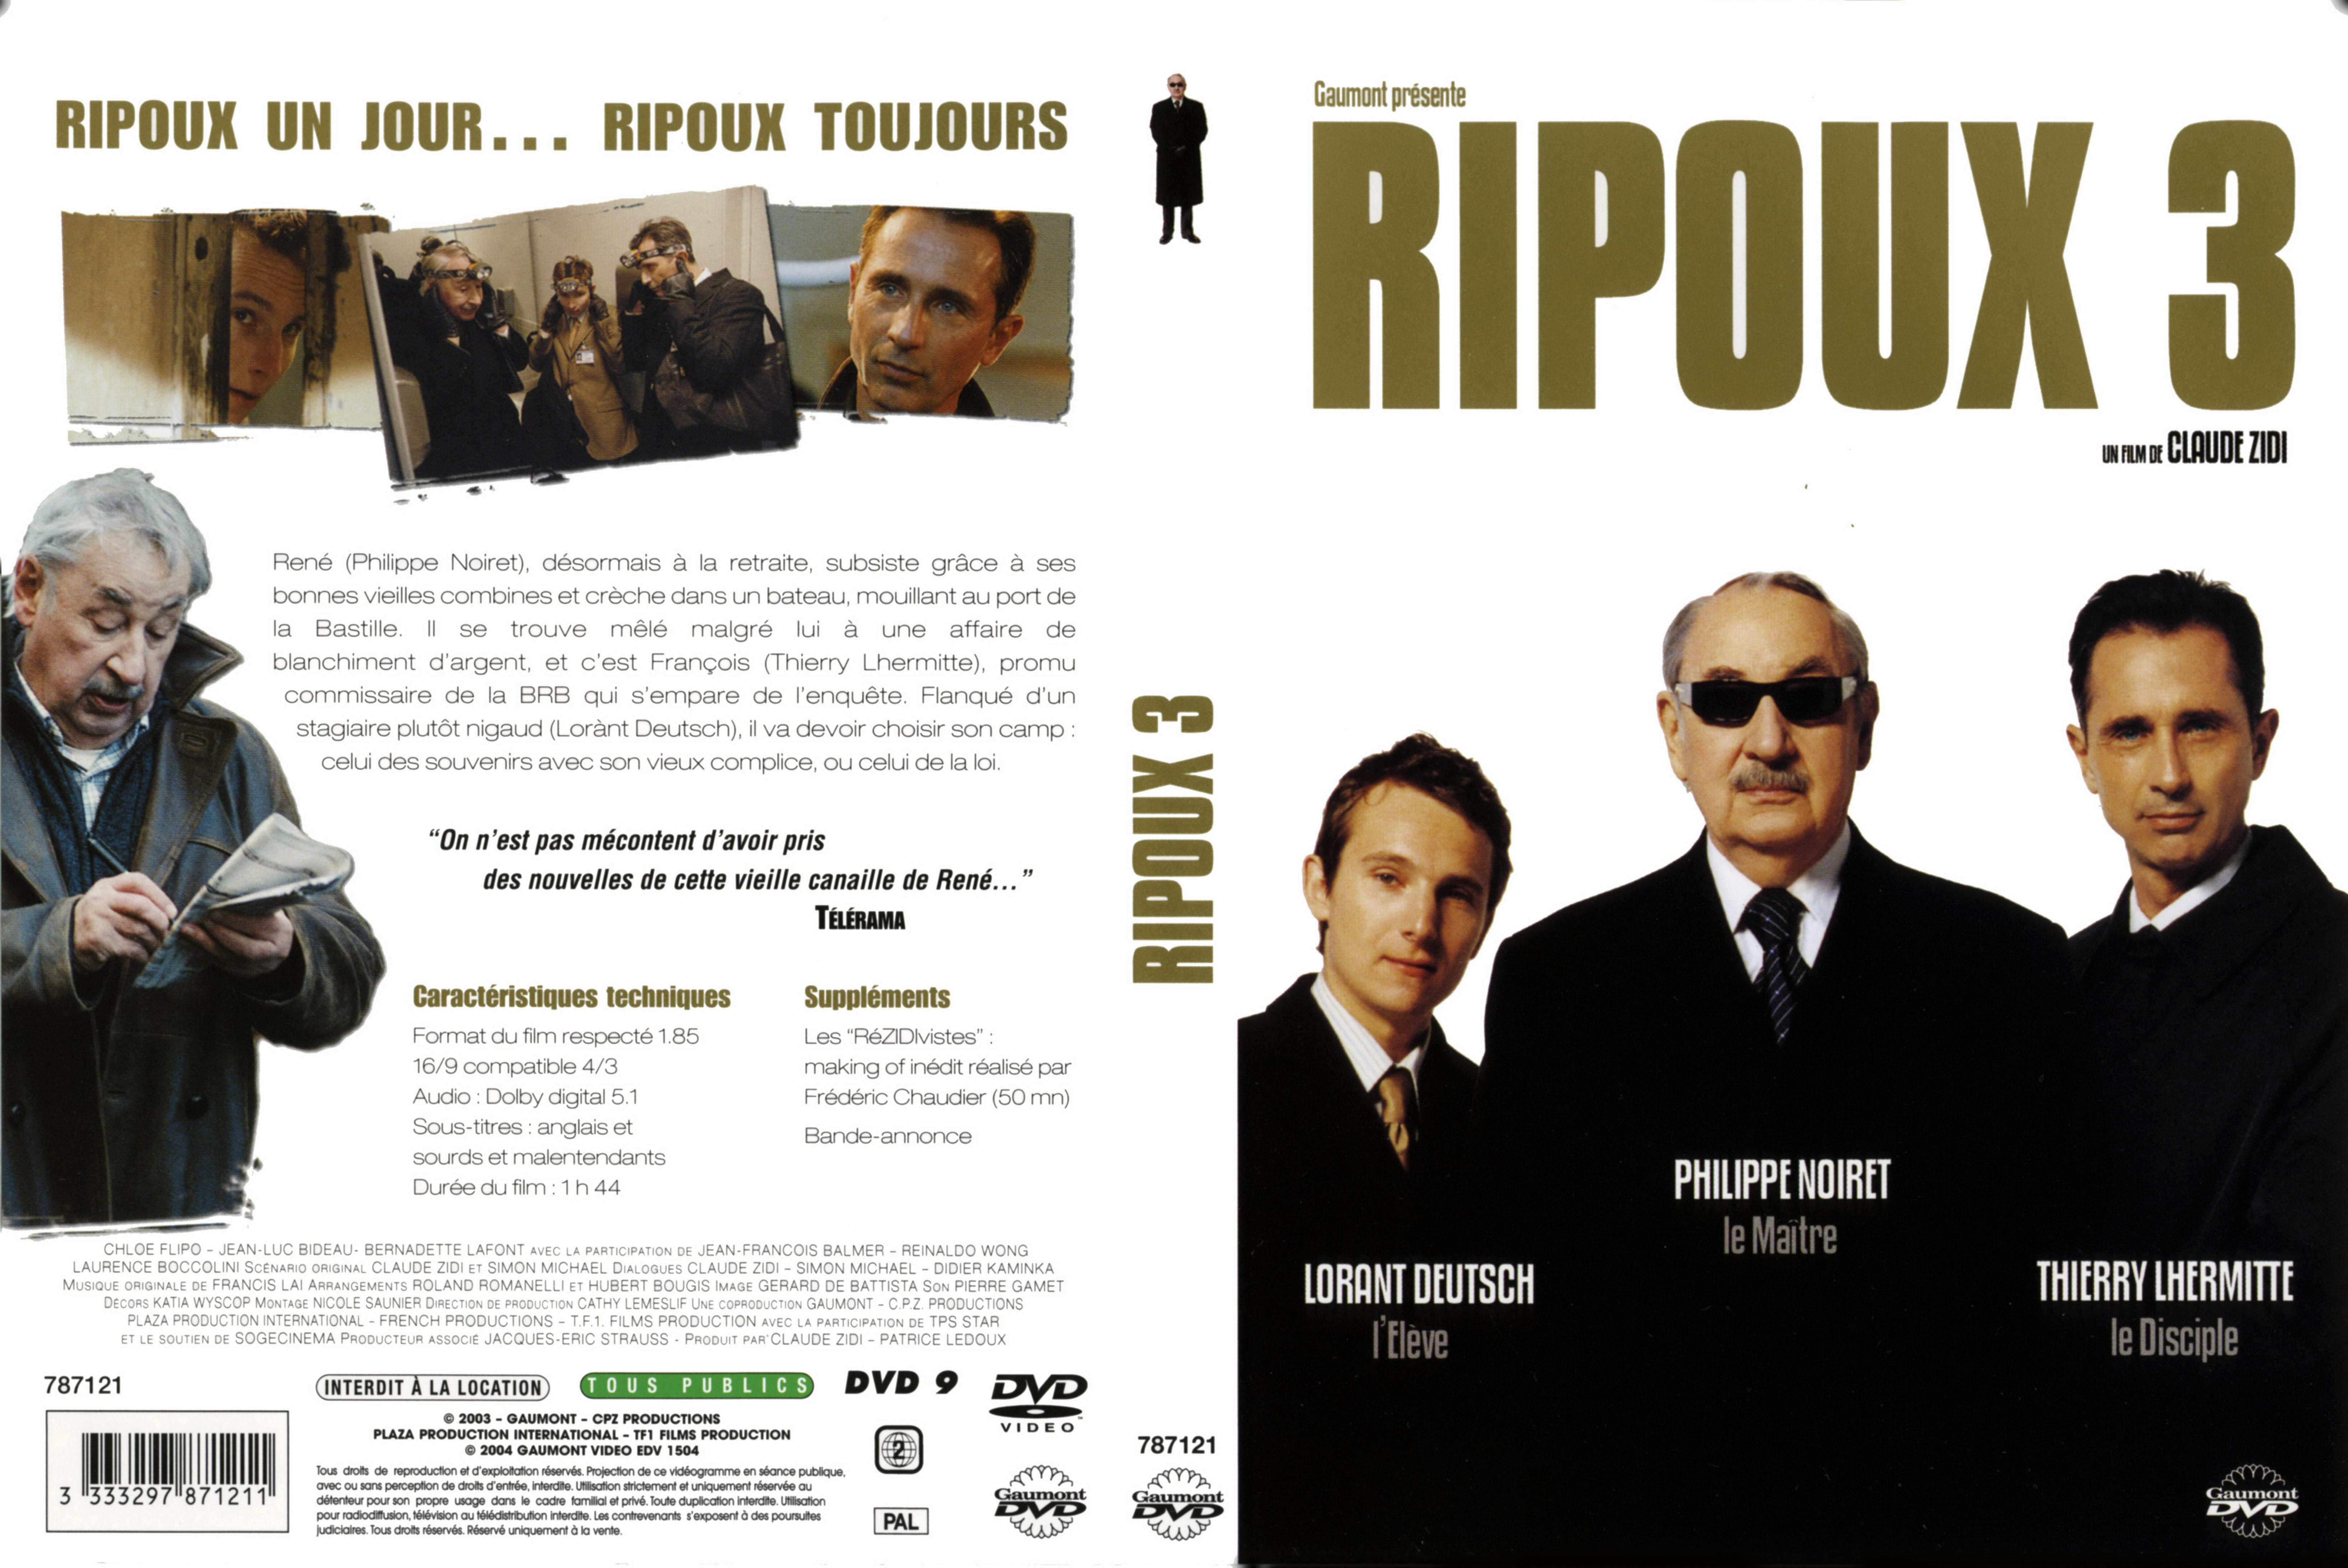 Jaquette DVD Ripoux 3 v2